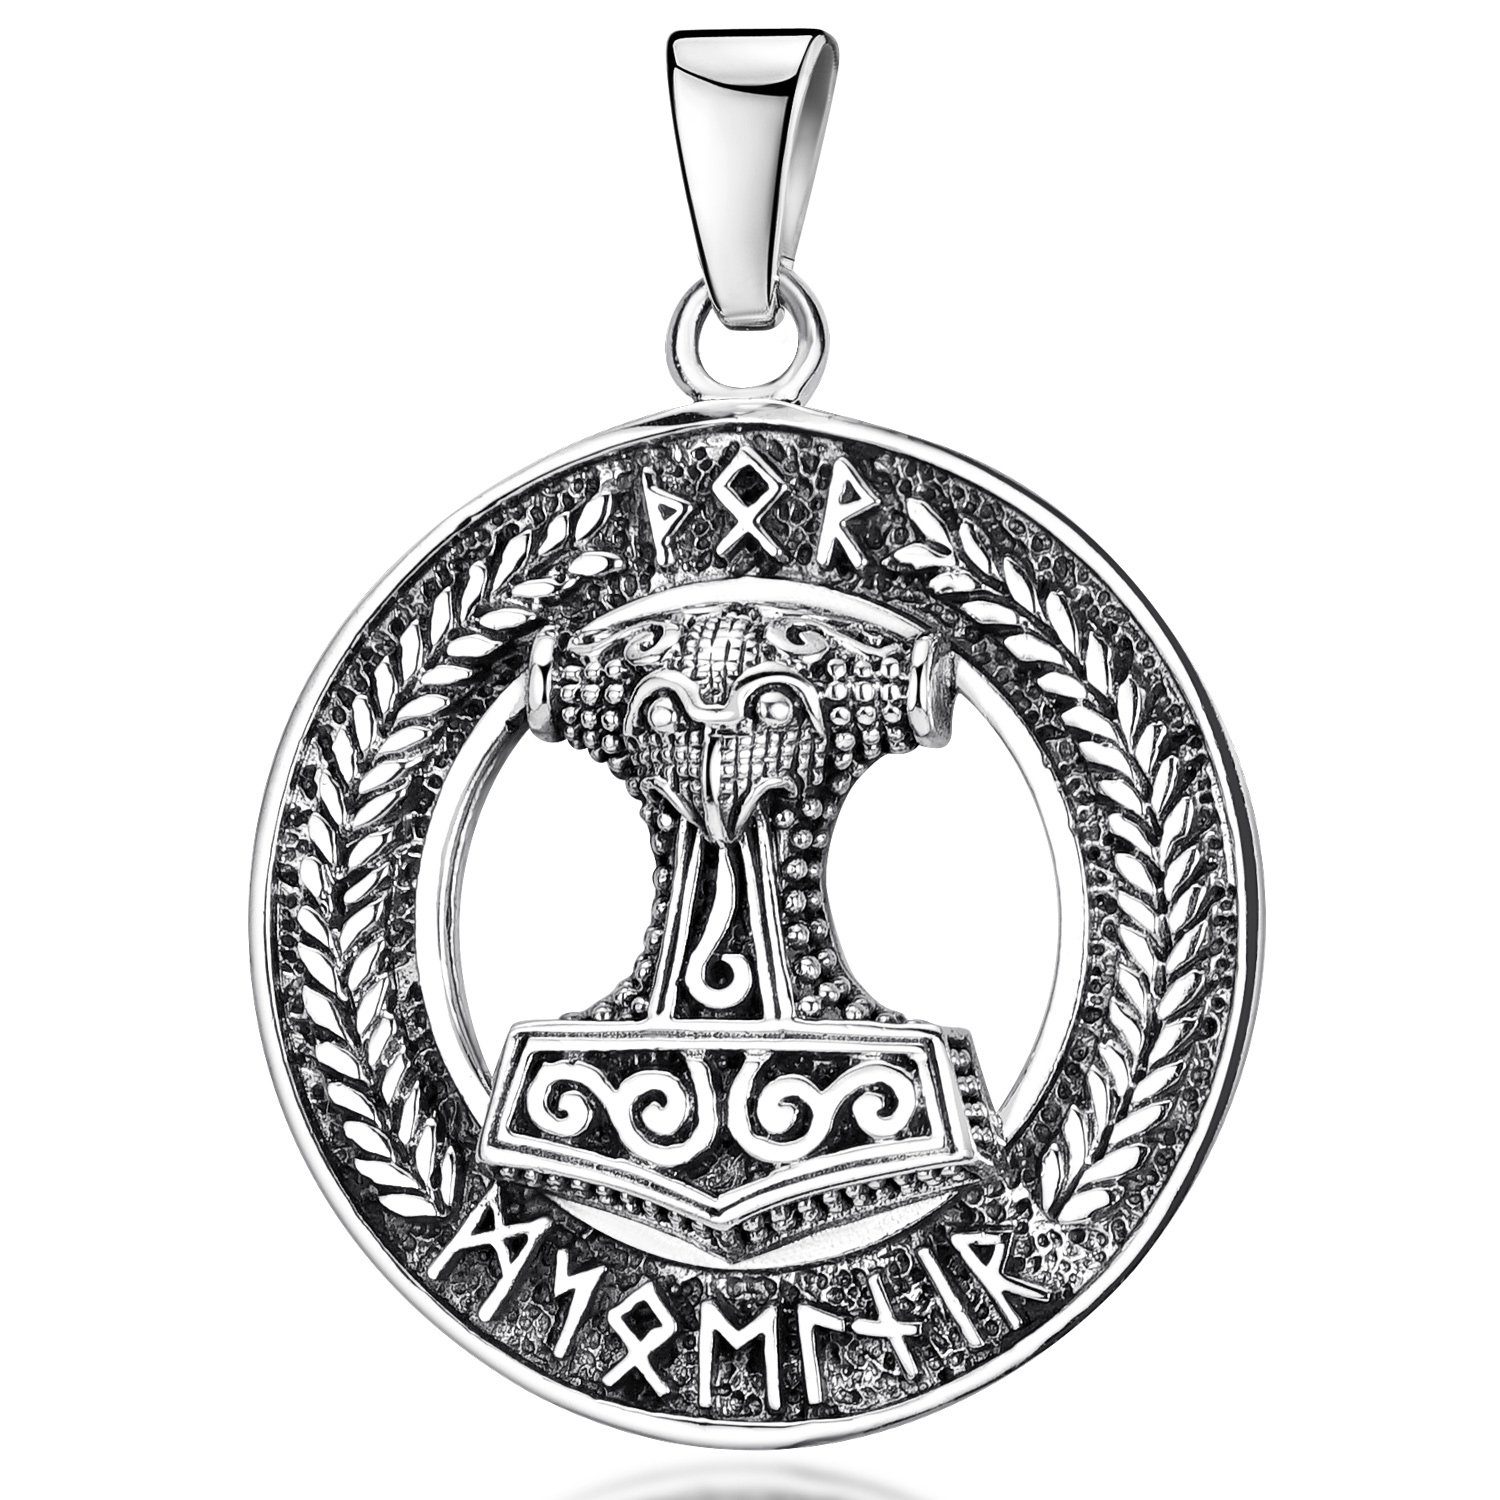 Silber, Kettenanhänger geschwärzt 925 Herren Thors KA-135, Runen Hammer Materia Sterling